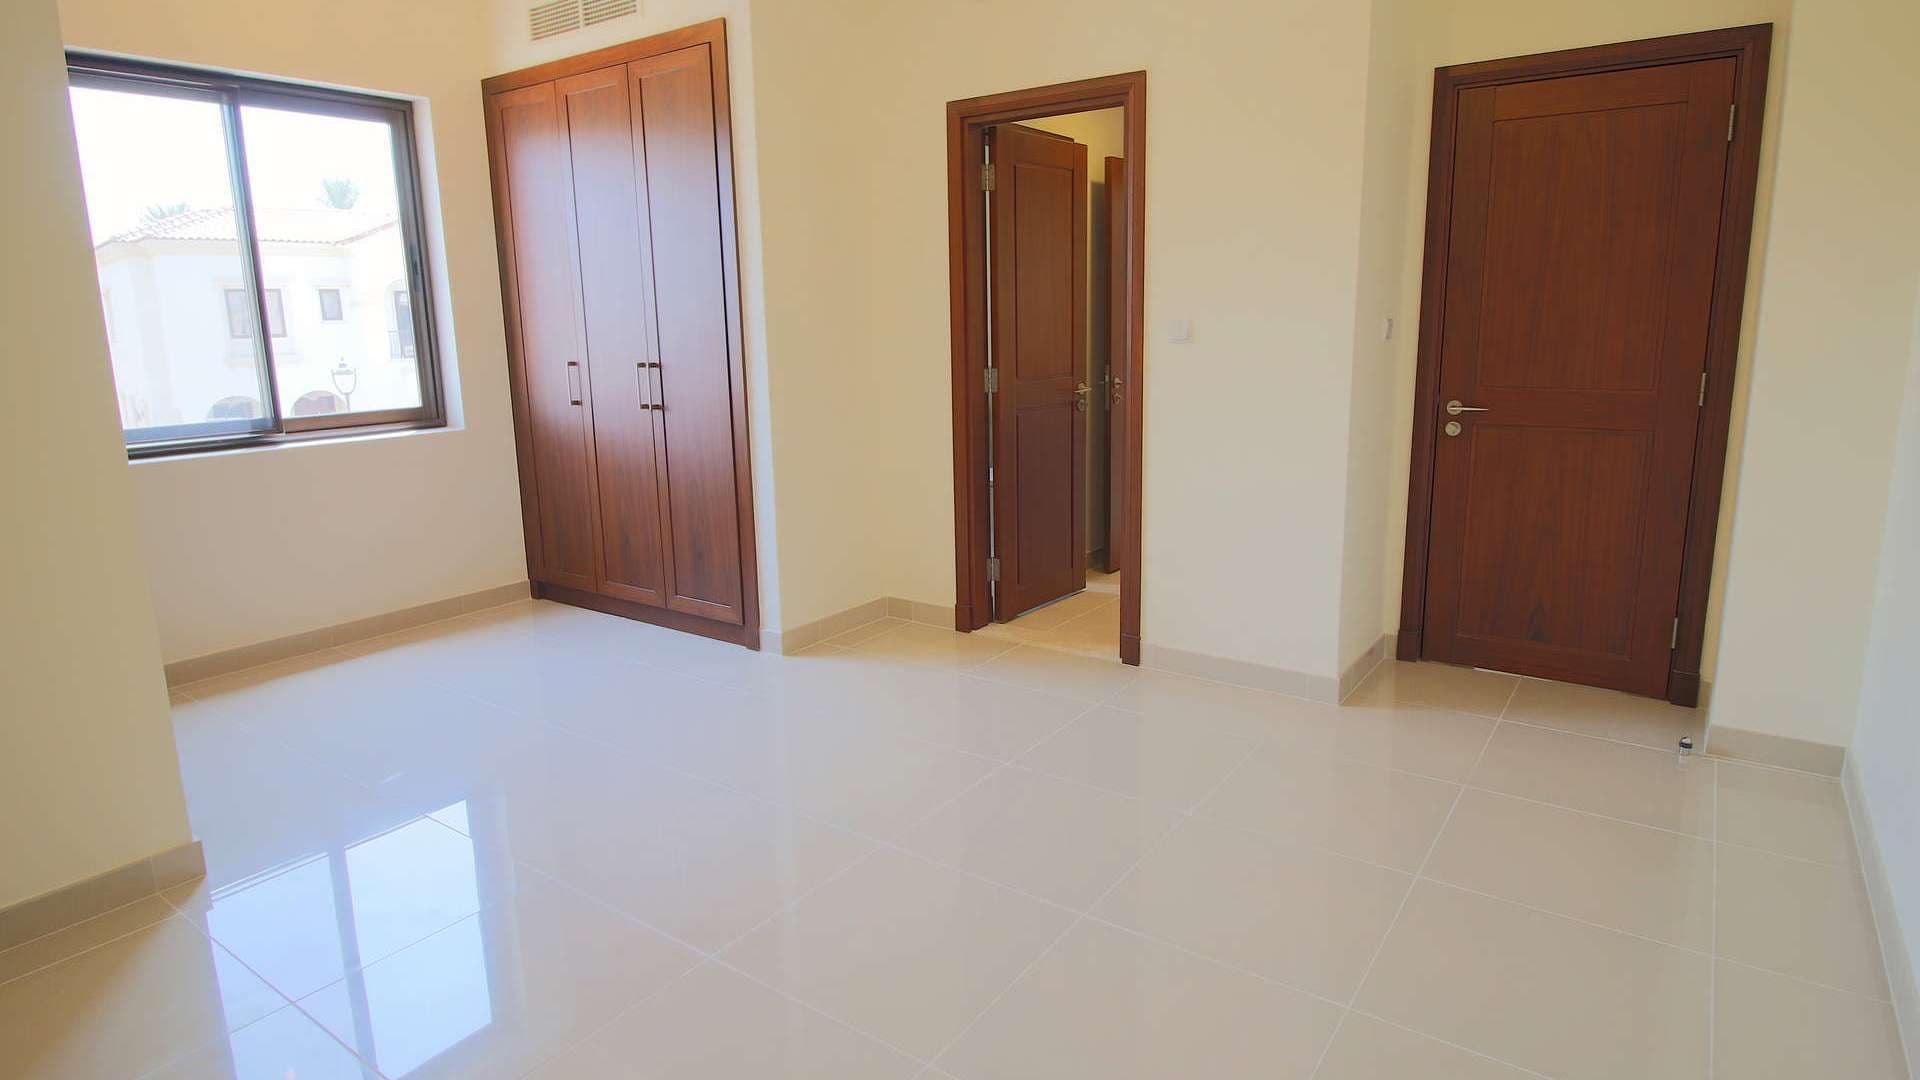 5 Bedroom Villa For Rent Samara Lp08847 148fad91d0a98000.jpeg